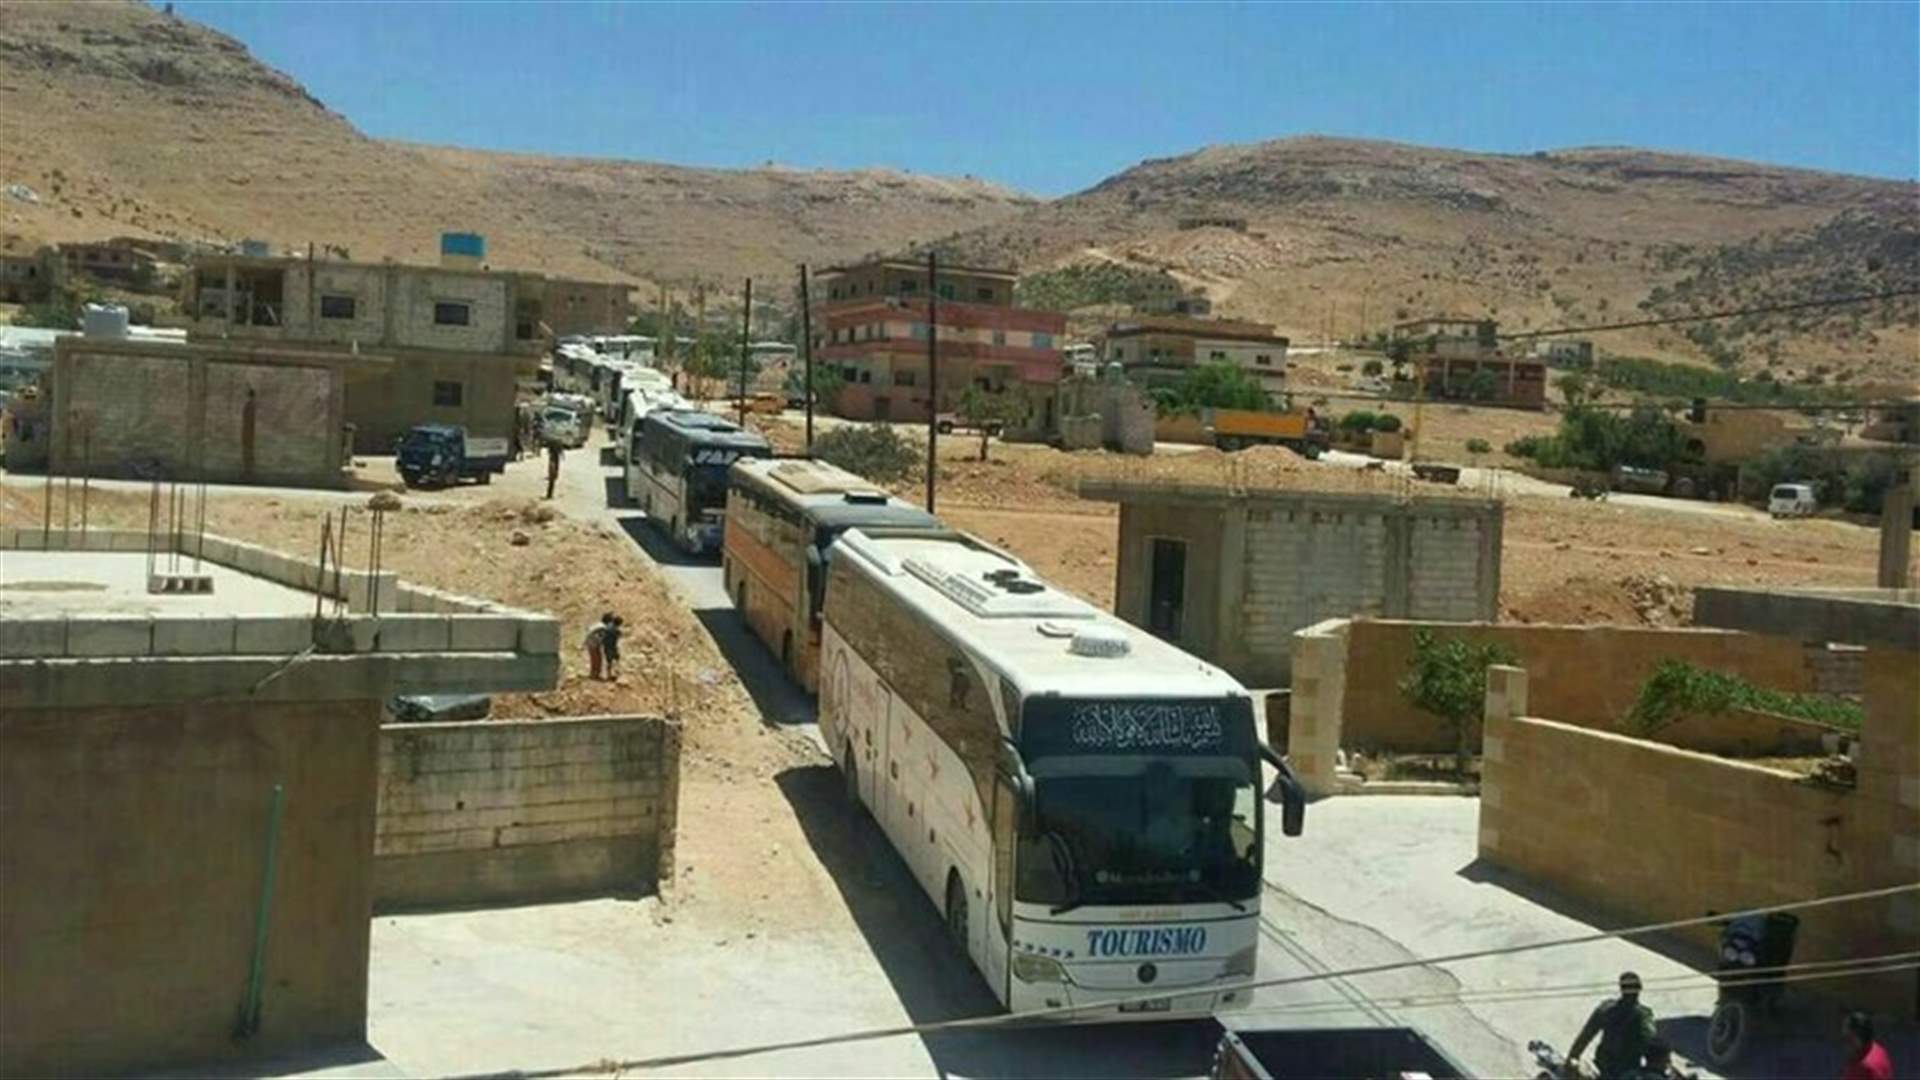 بالارقام – هذه هي اعداد النازحين الذين ستقلهم الحافلات من عرسال الى ادلب